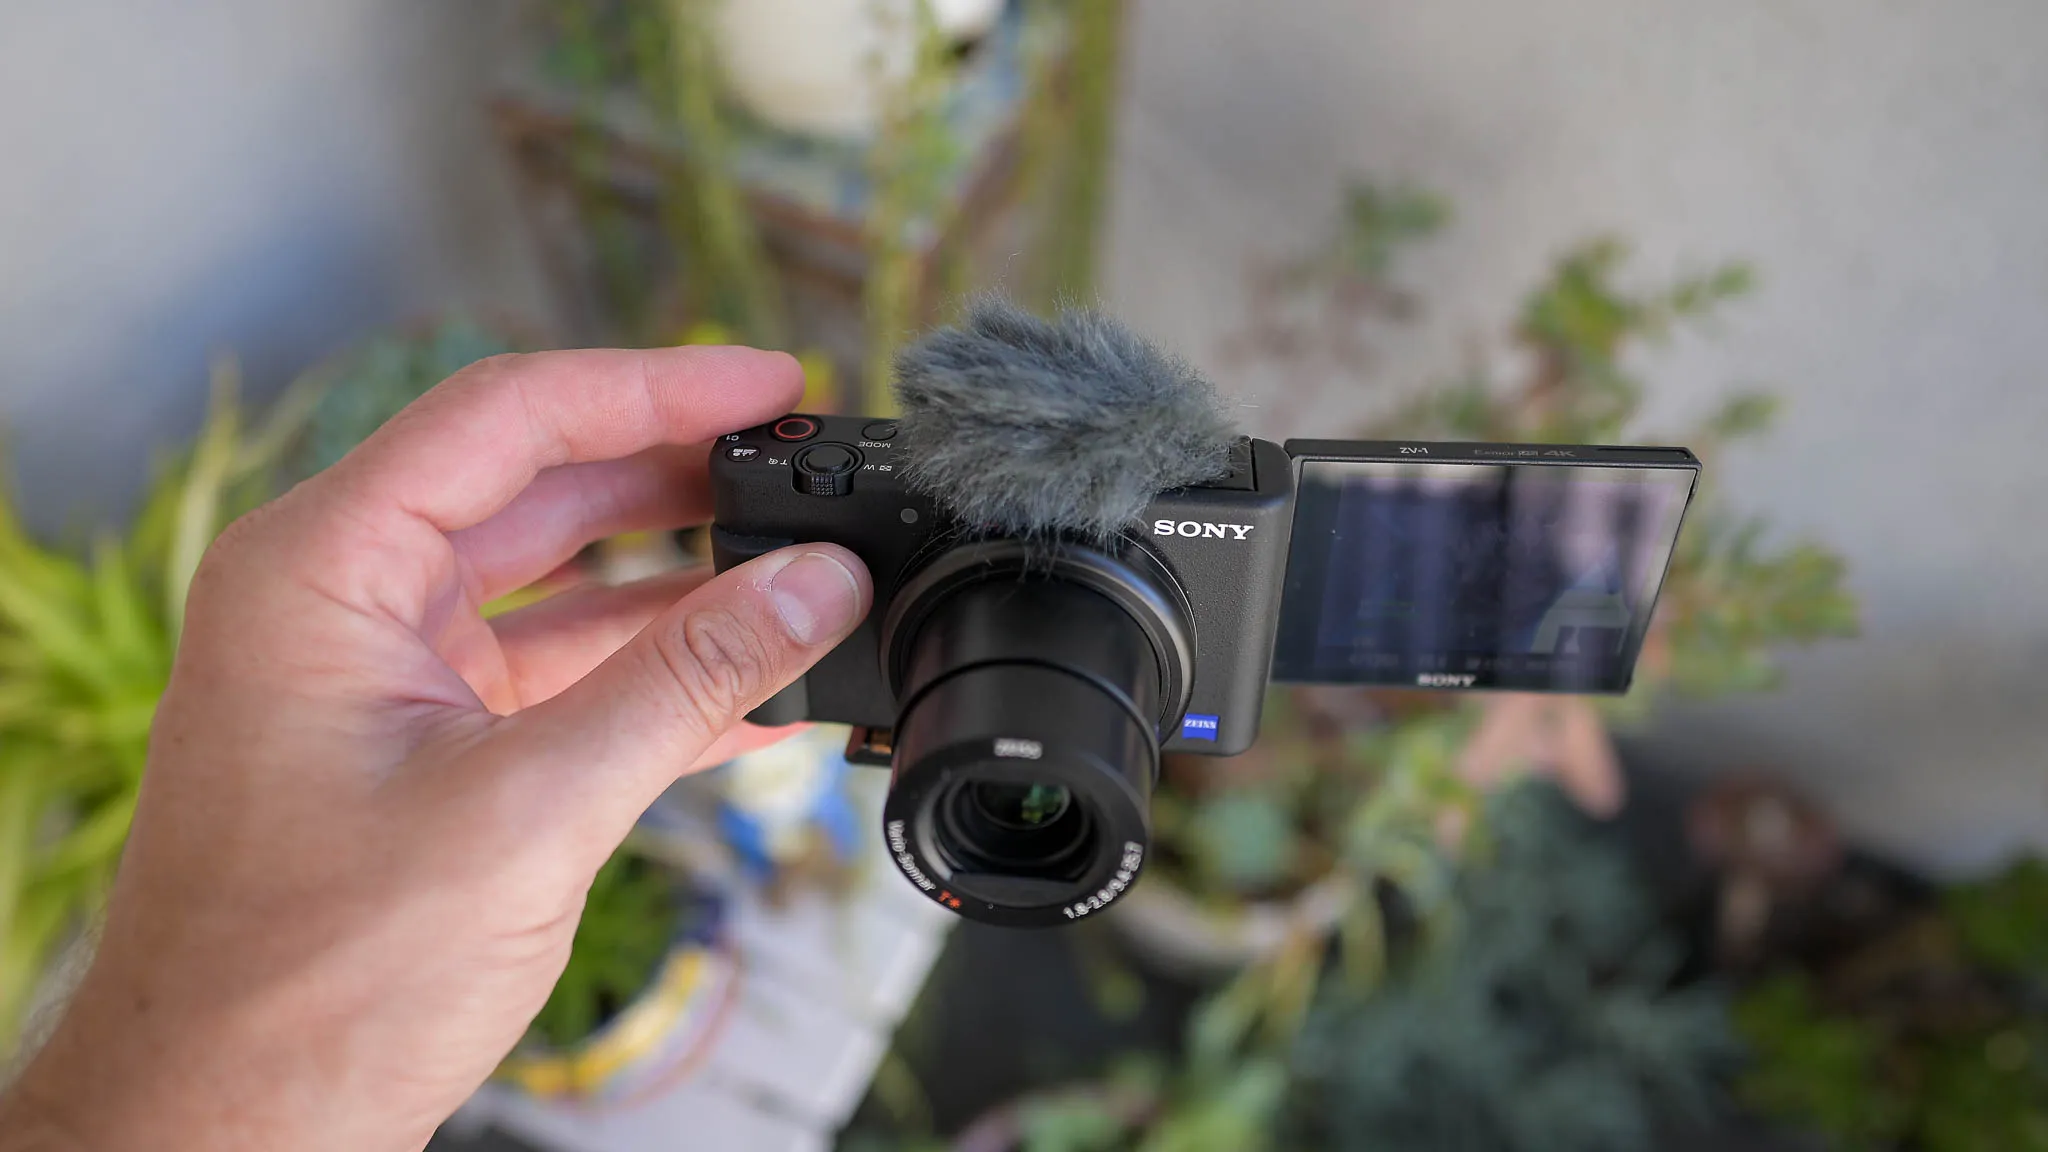 Khuyến mãi tháng 3 với loạt máy ảnh nhỏ gọn, tiện lợi ZV-1 và RX100 VII từ Sony